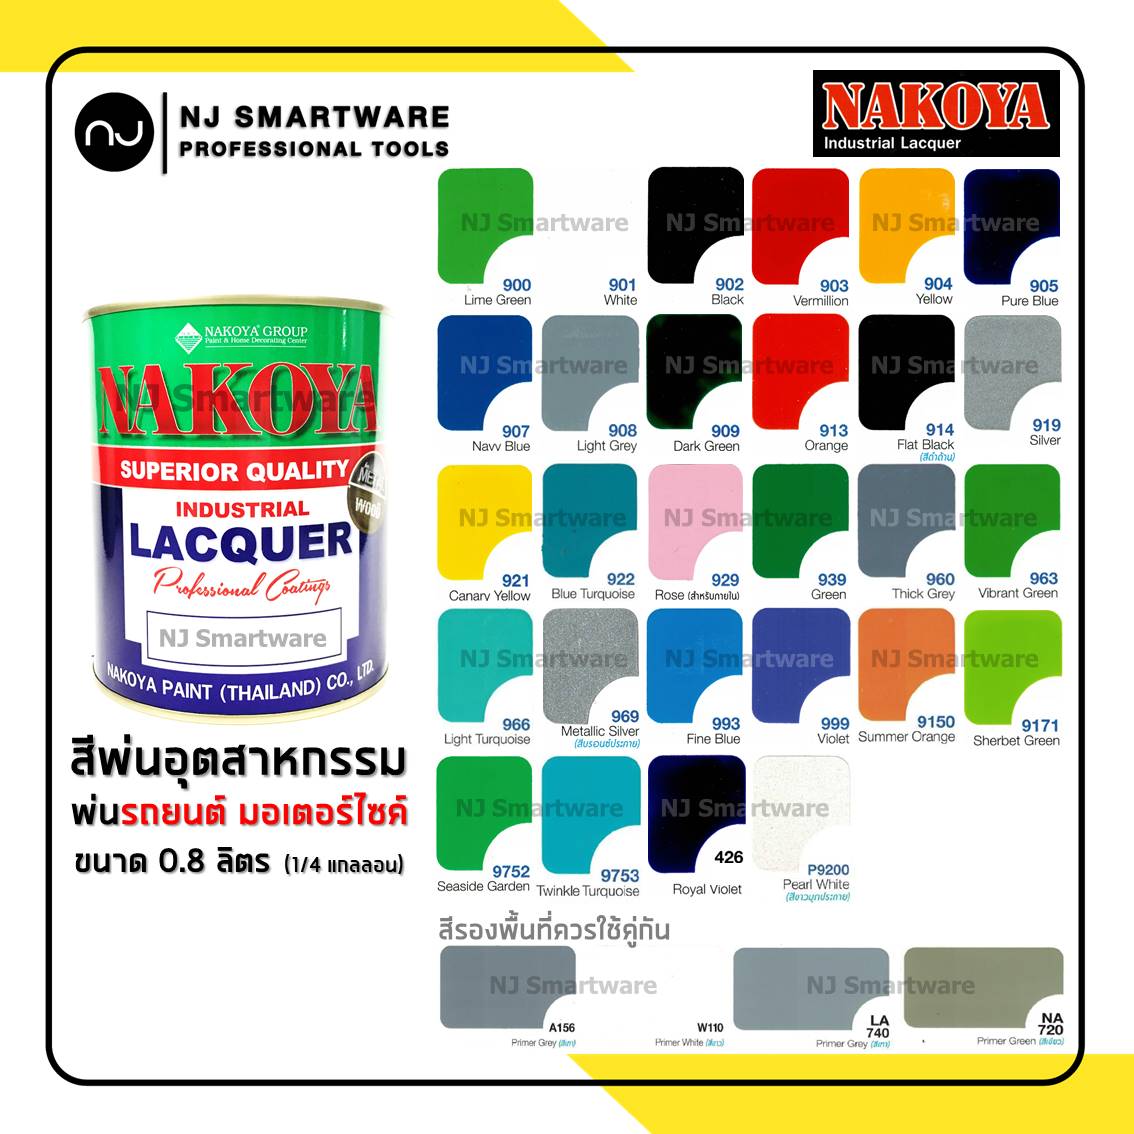 สีพ่นรถยนต์นาโกย่า สีพ่นอุตสาหกรรม สีพ่นมอเตอร์ไซค์ ขนาด 0.8 ลิตร (1/4 แกลลอน) - NAKOYA Industrial Lacquer Colour 0.8 Liter (1/4 Gallon)